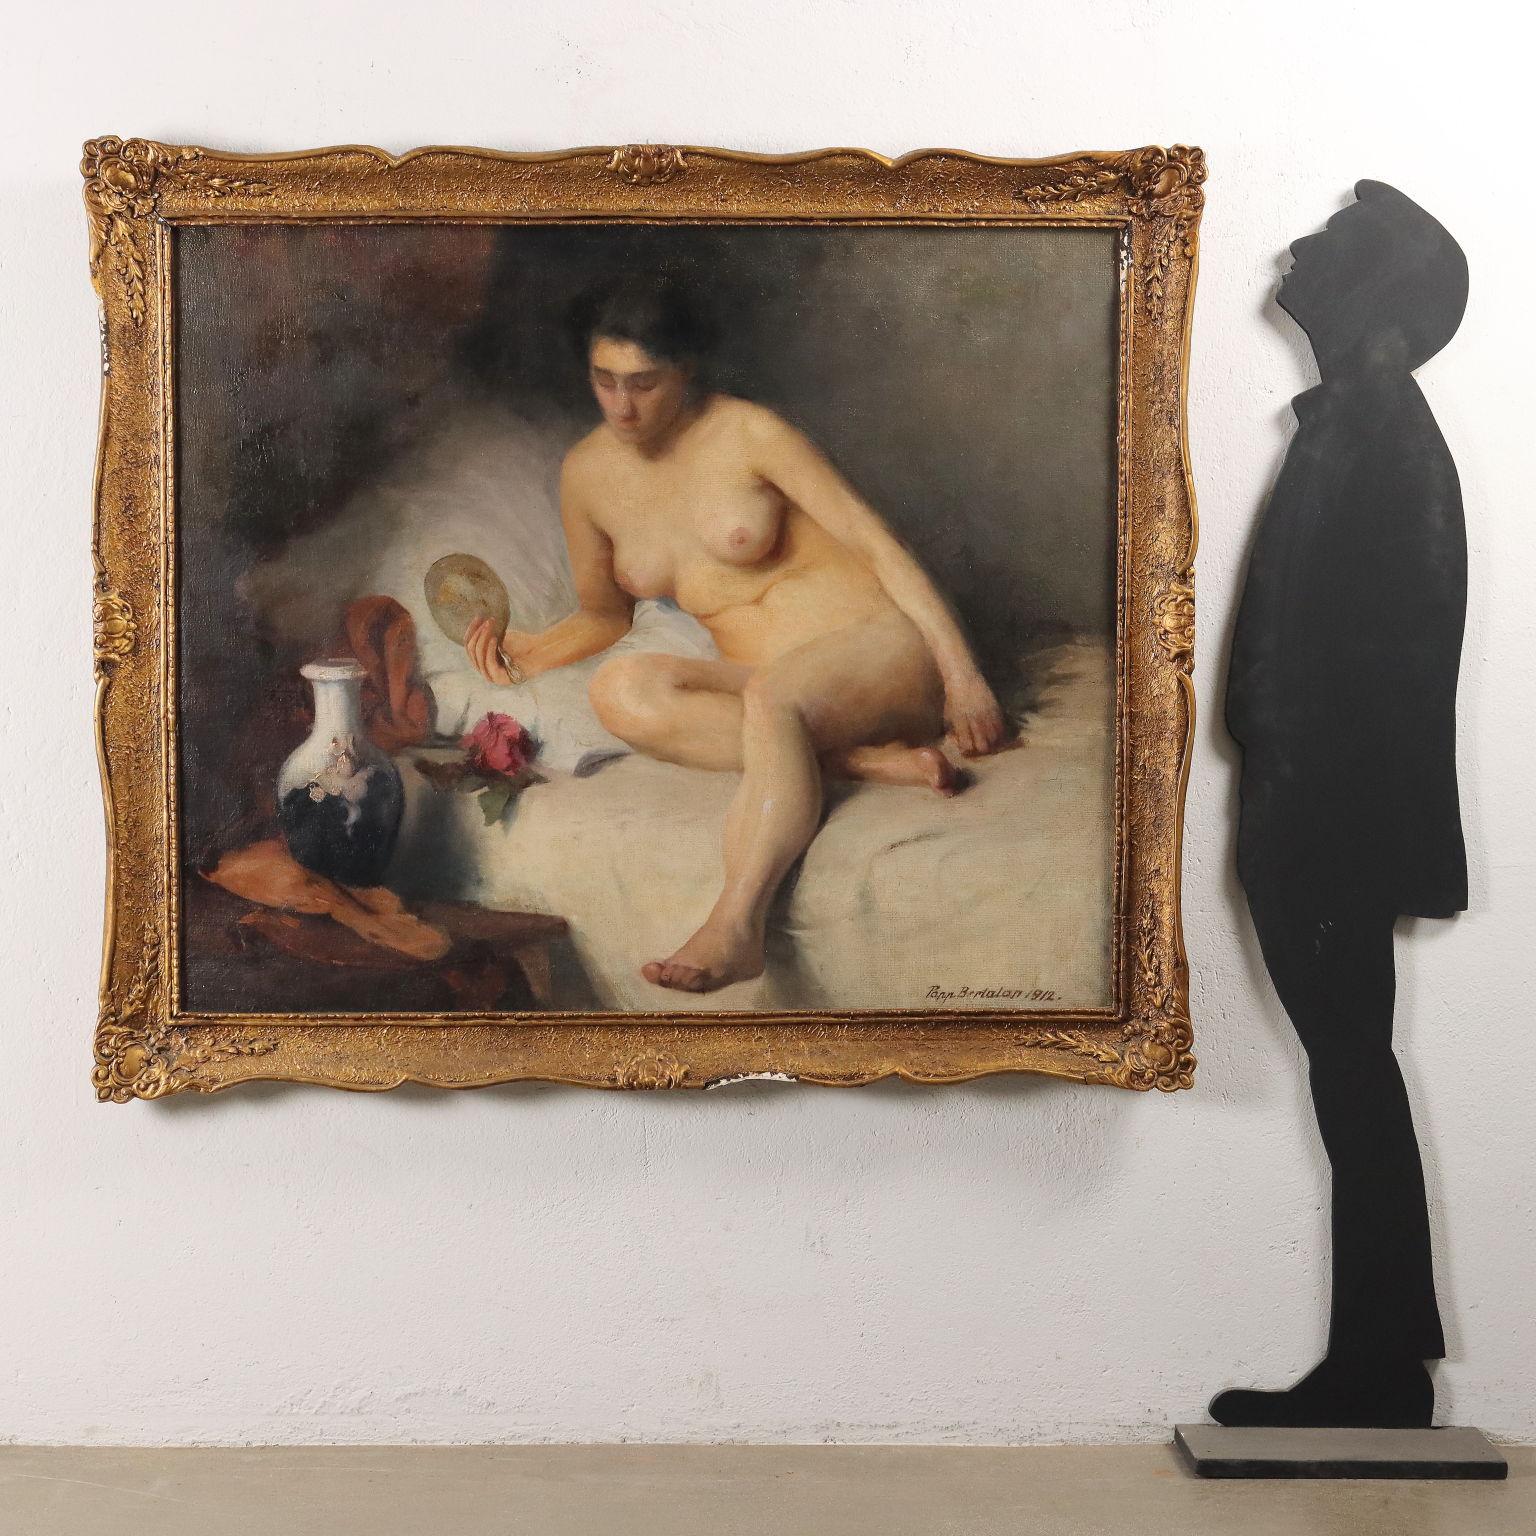 Nudo femminile 1912 - Painting by Papp Bertalan